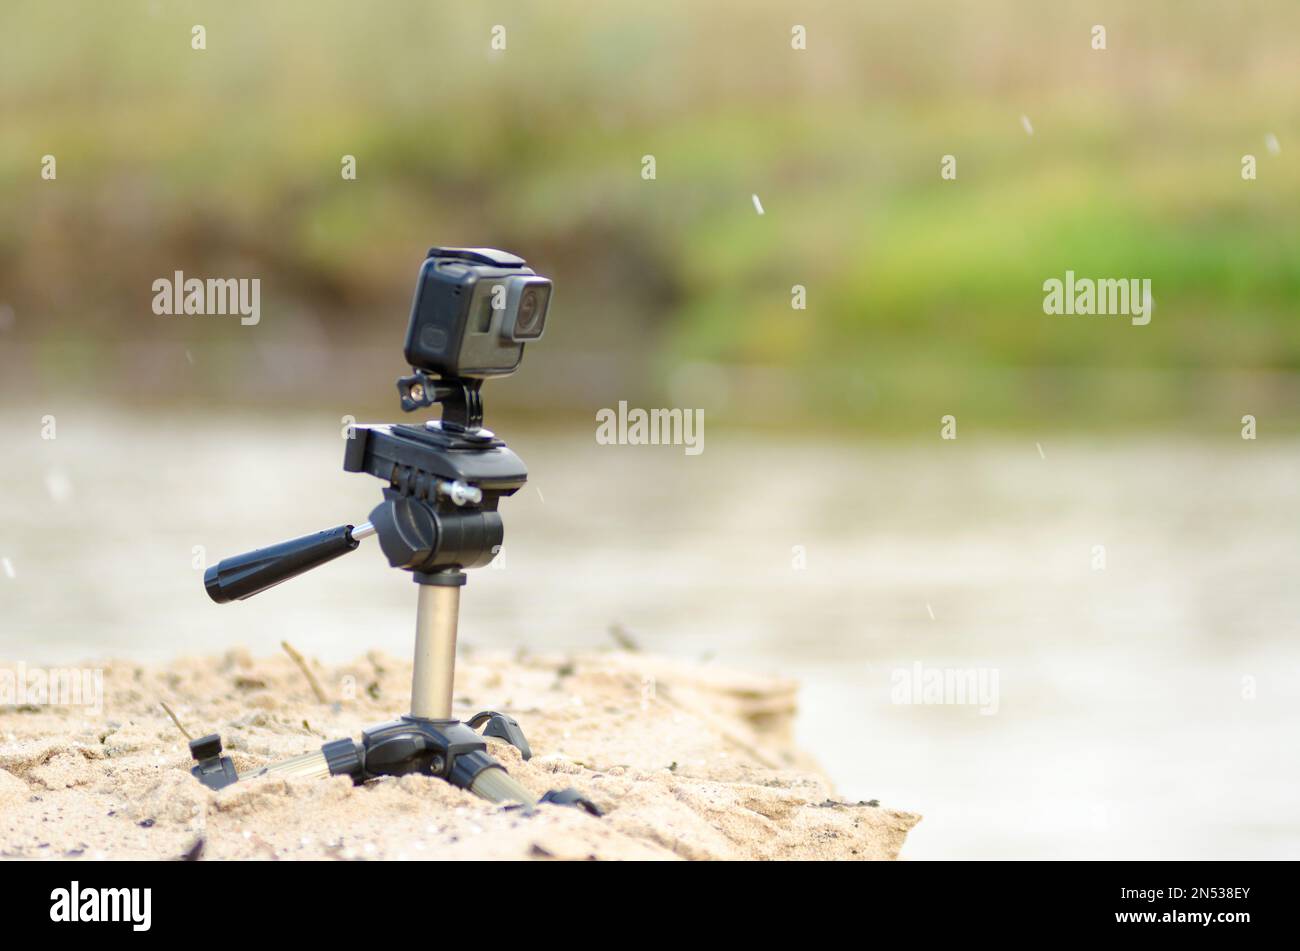 Action camera si trova su un piccolo treppiede, registrando video, sulla riva sabbiosa del fiume con erba e pioggia. Foto Stock